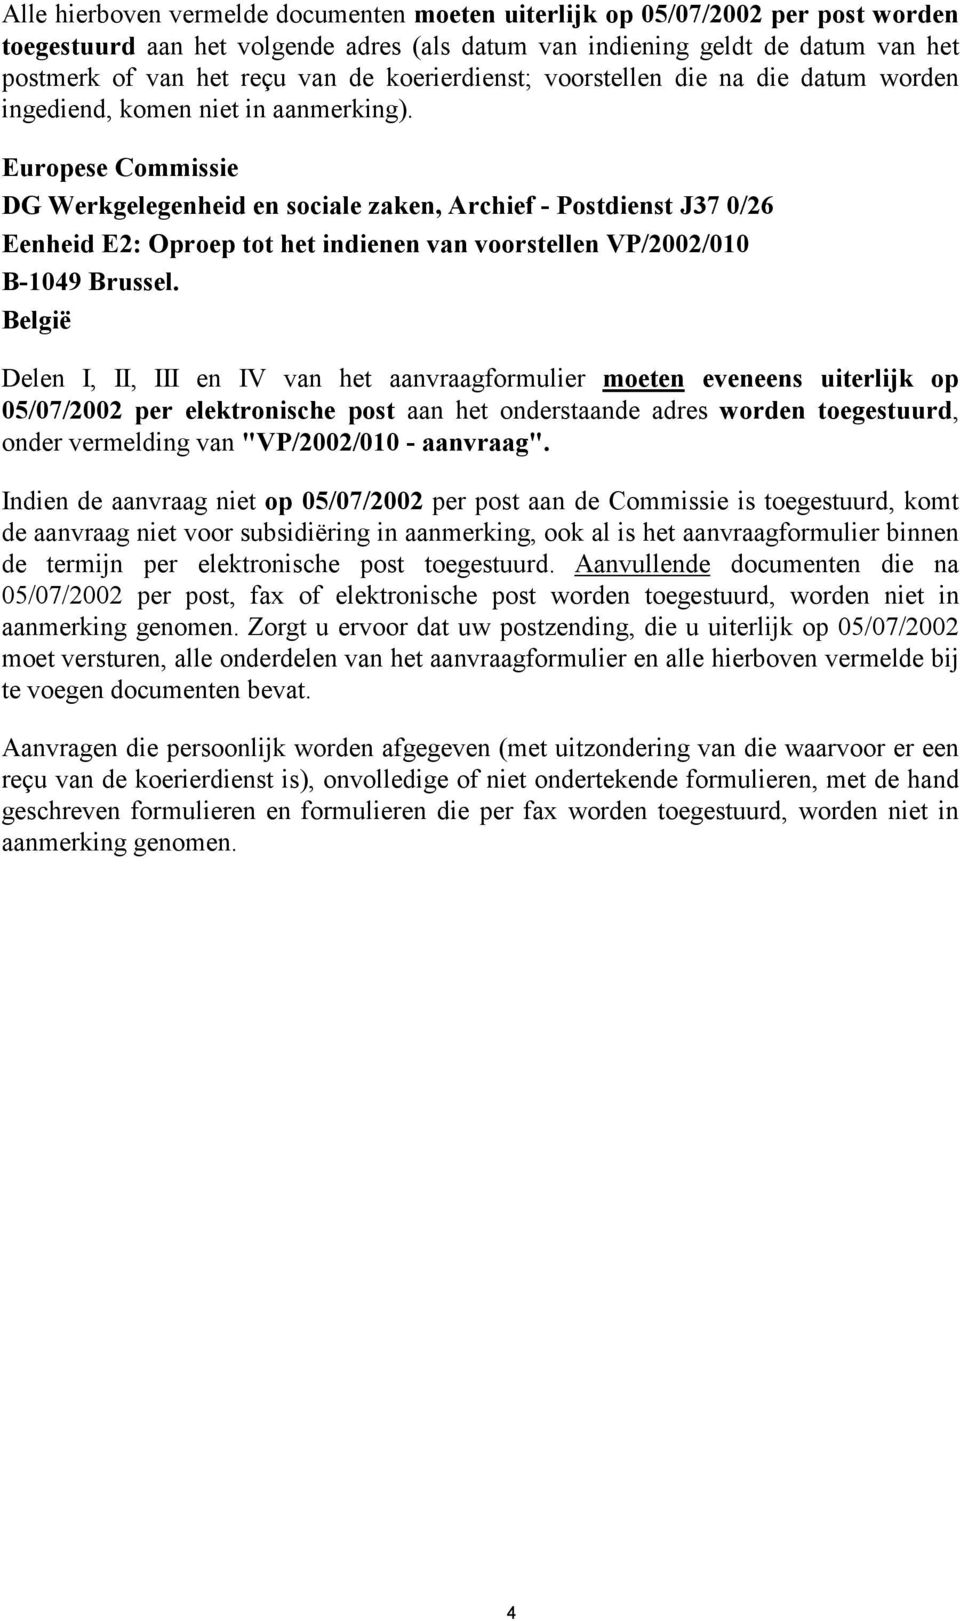 Europese Commissie DG Werkgelegenheid en sociale zaken, Archief - Postdienst J37 0/26 Eenheid E2: Oproep tot het indienen van voorstellen VP/2002/010 B-1049 Brussel.